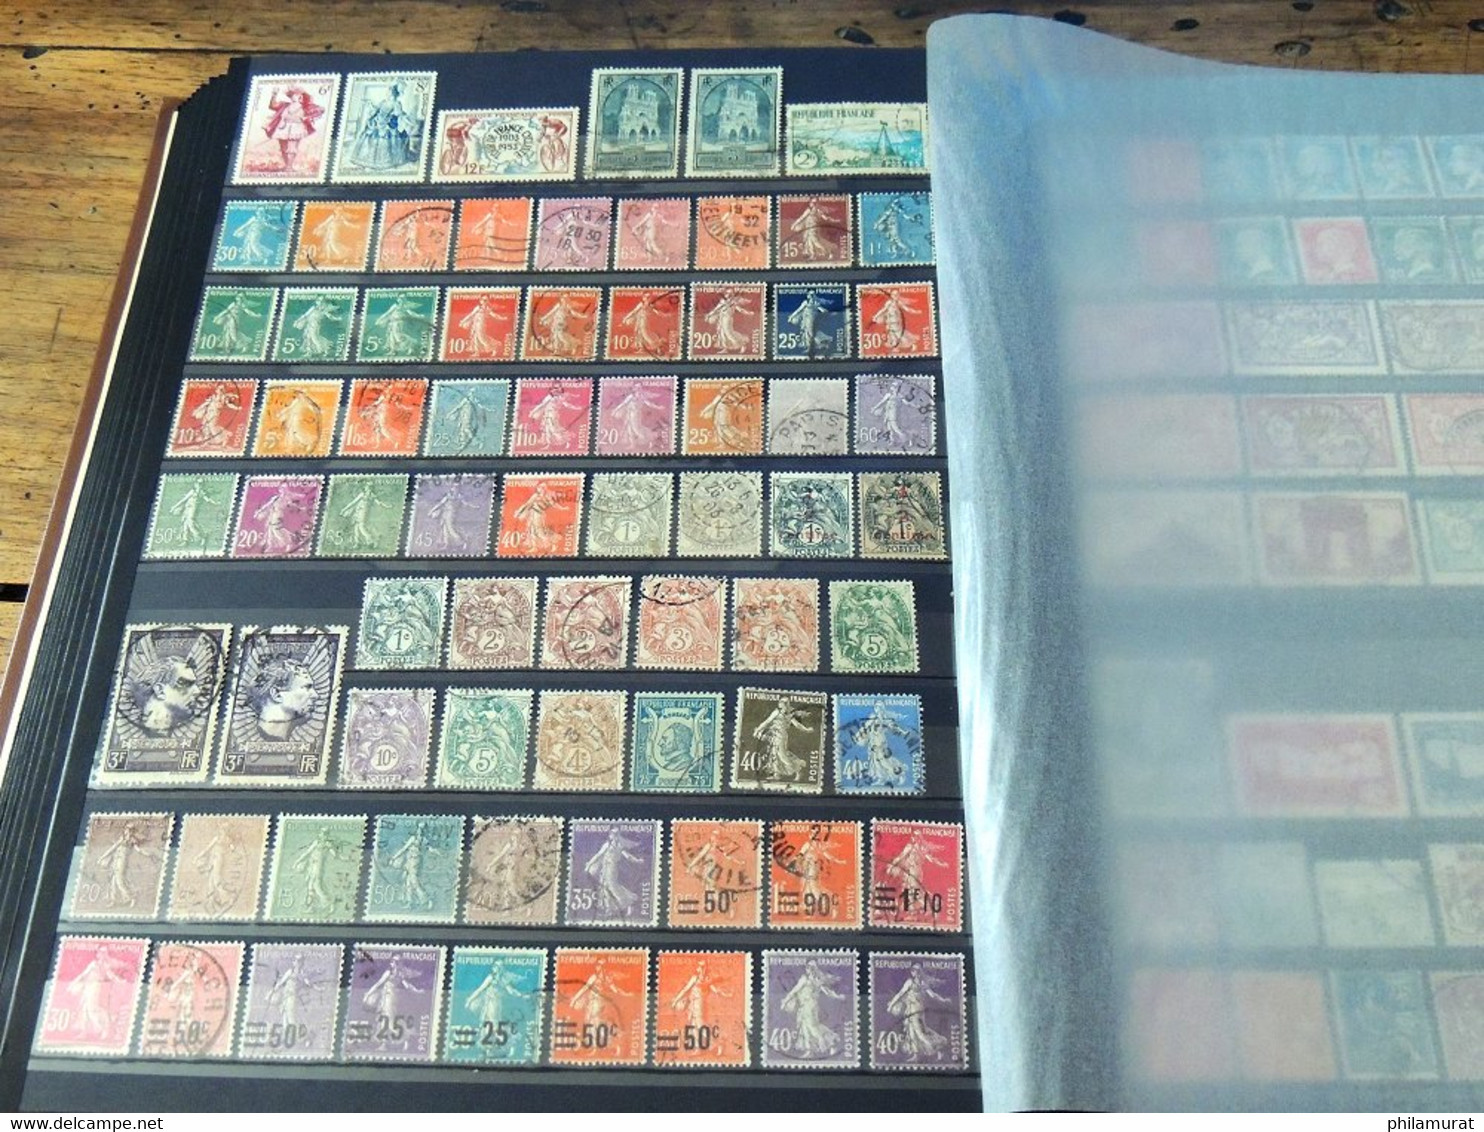 VRAC France 1876/2000 + Colonies, des centaines de timbres neufs et oblitérés